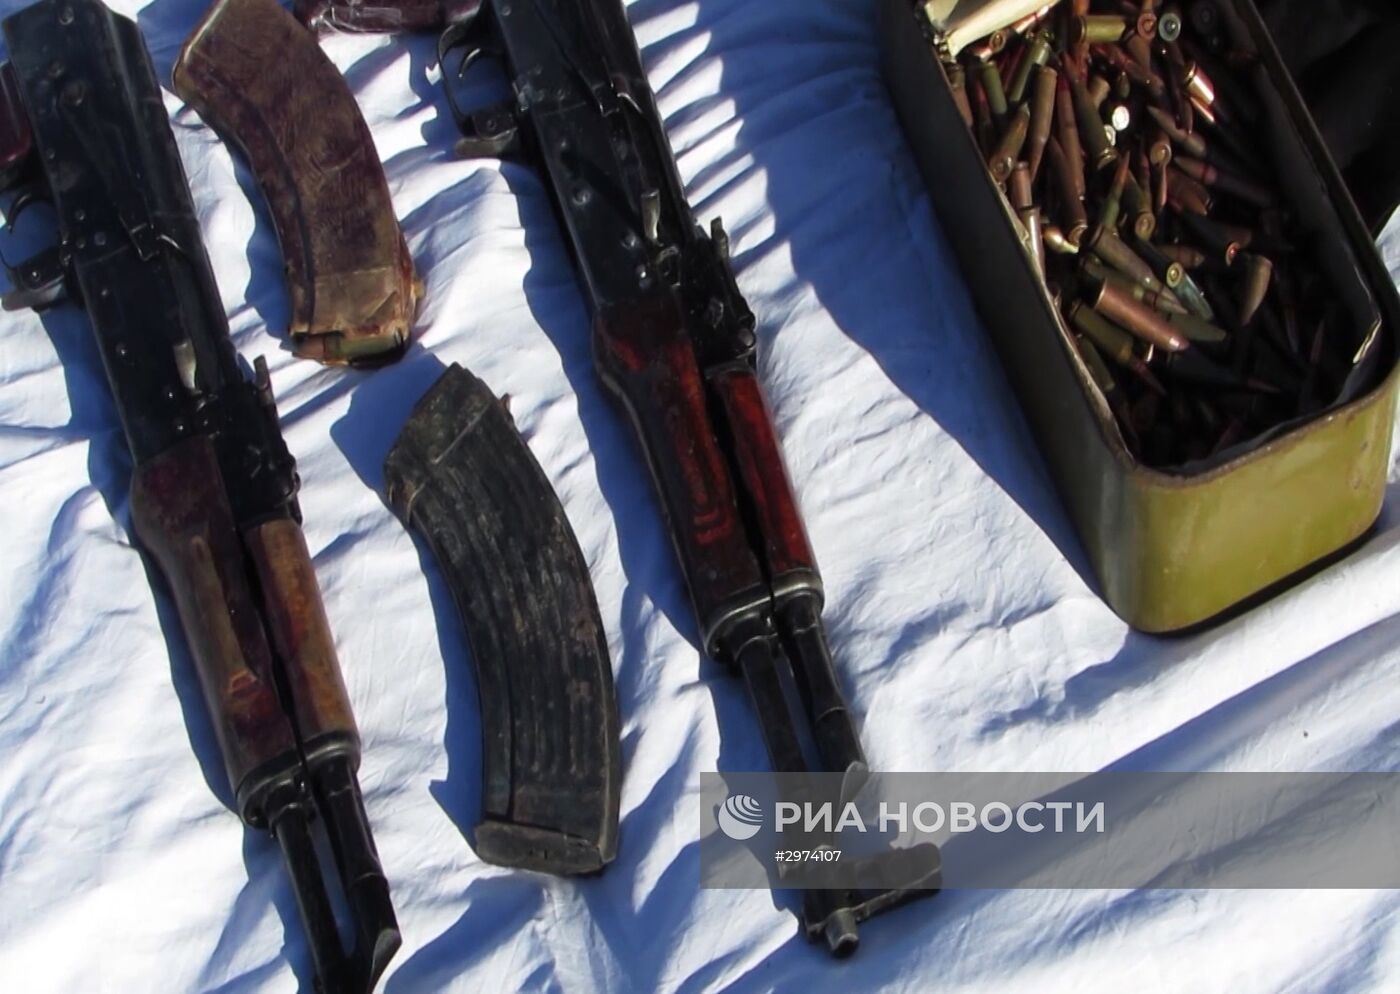 ФСБ задержала экстремистскую группу, готовившую теракты в Москве и Ингушетии